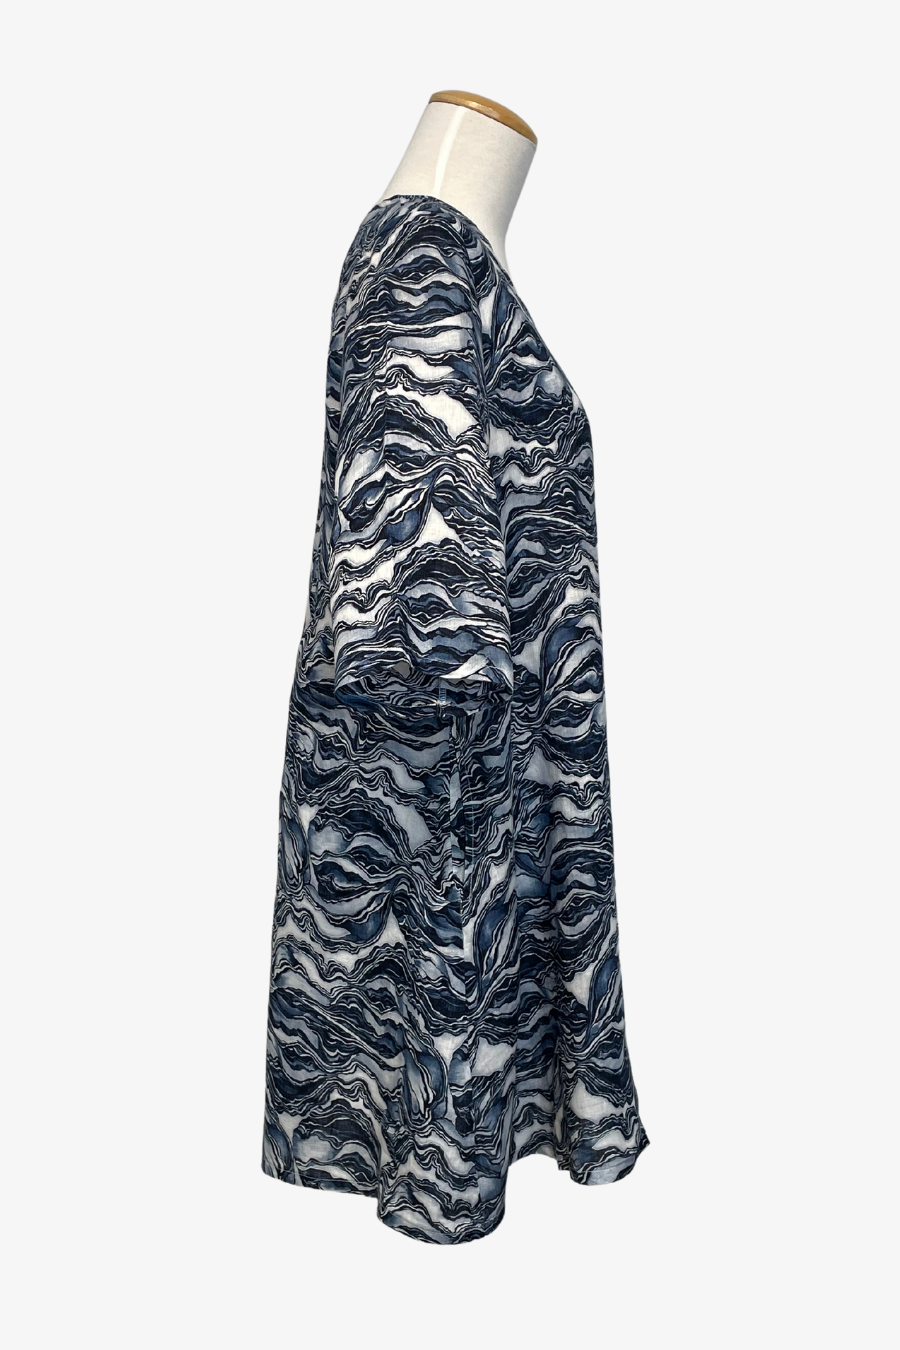 Hopper Dress in Strati Print Linen